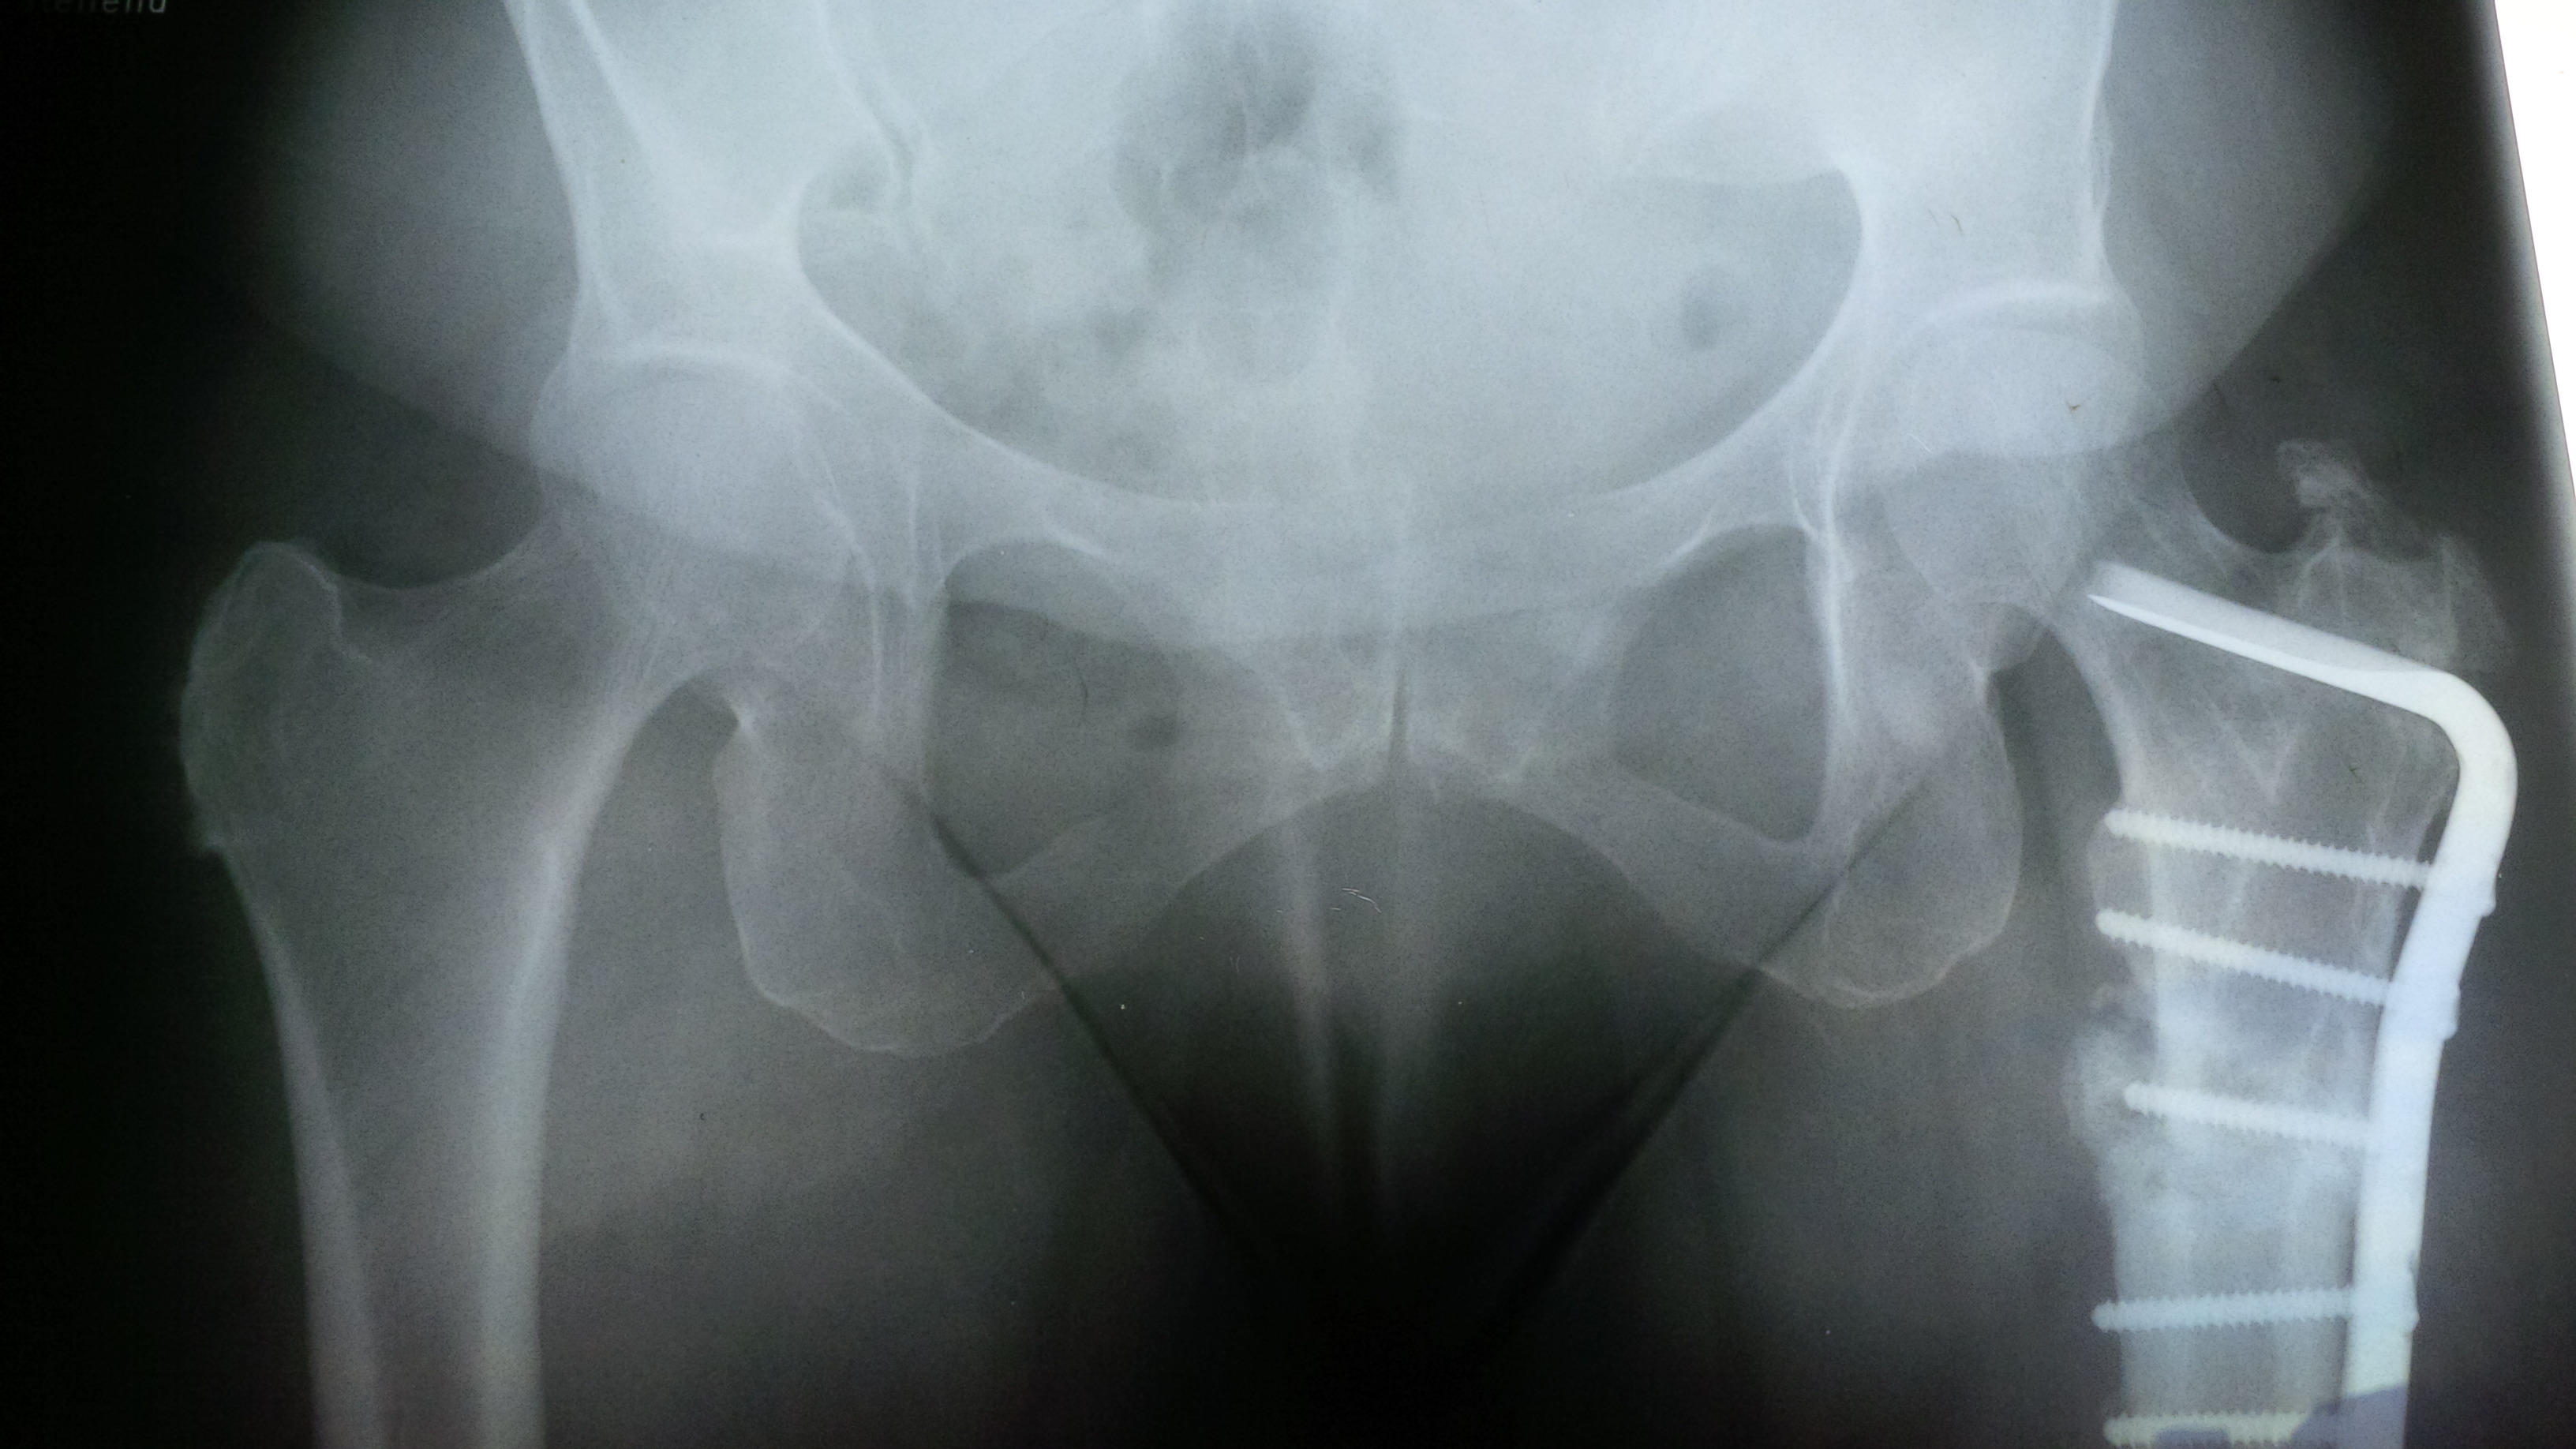 Röntgenaufnahme eines gebrochenen Oberschenkelknochens